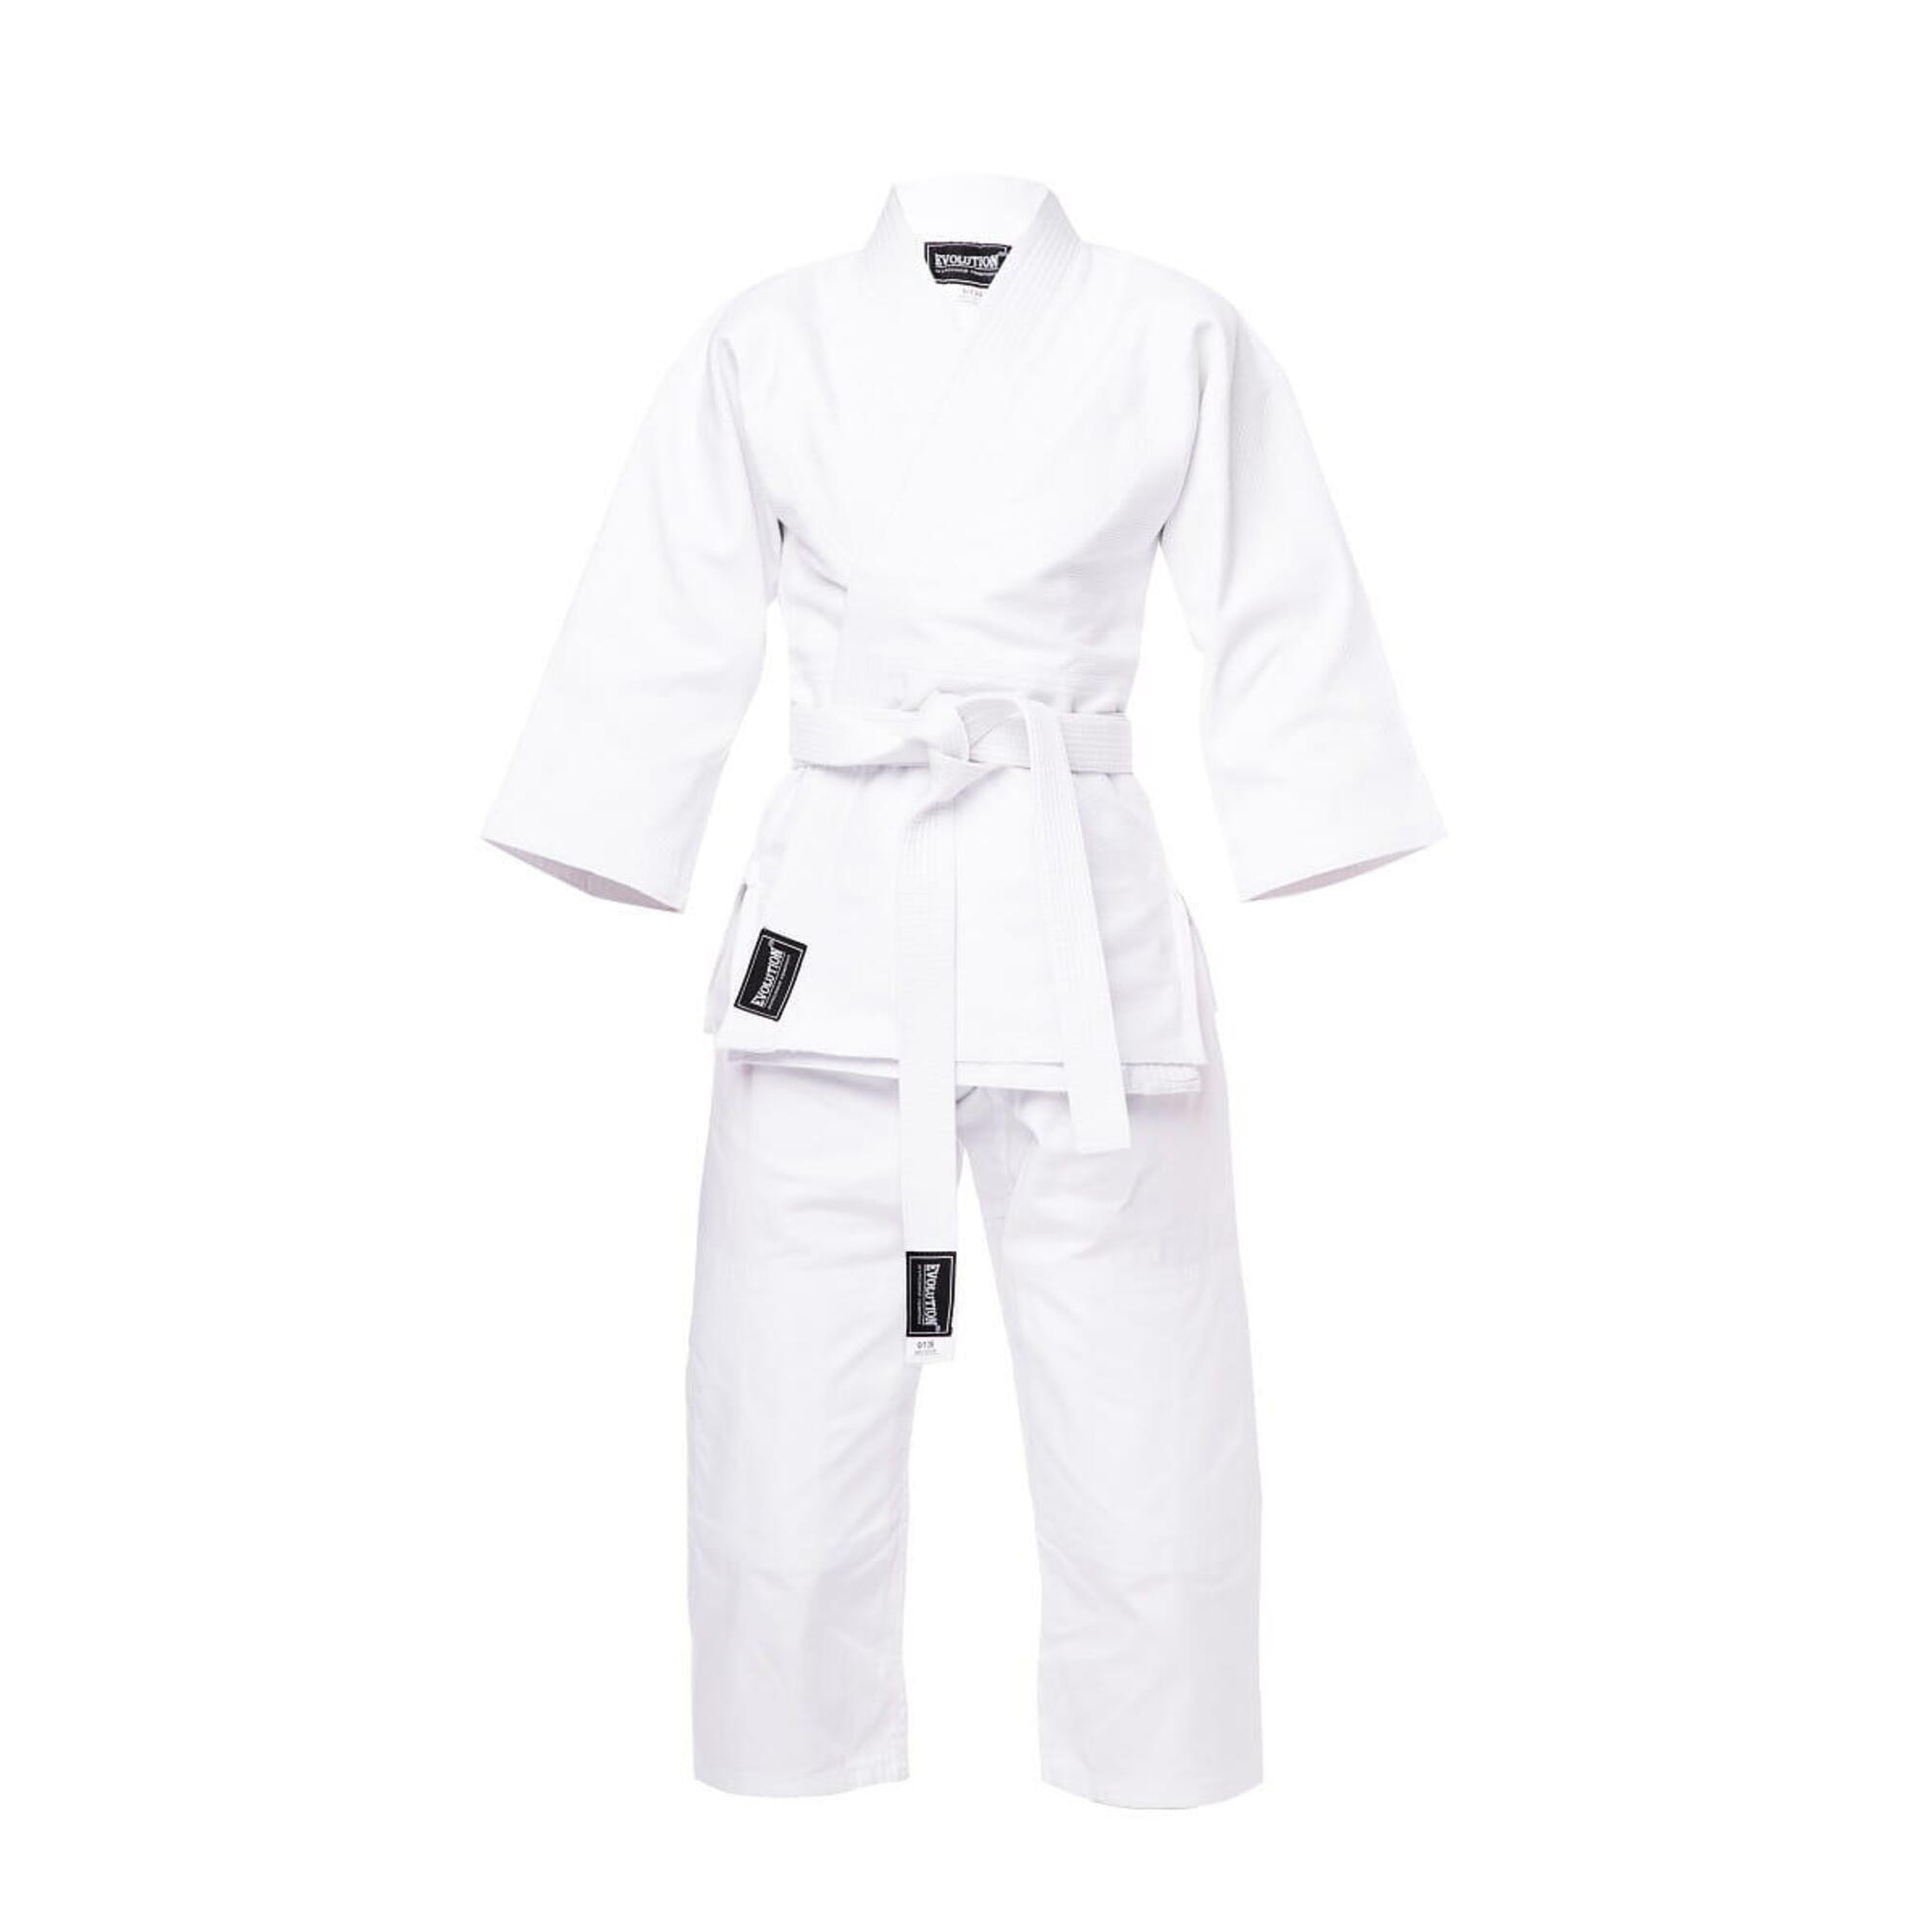 Kimono do judo Evolution Professional Equipment judoga 450g